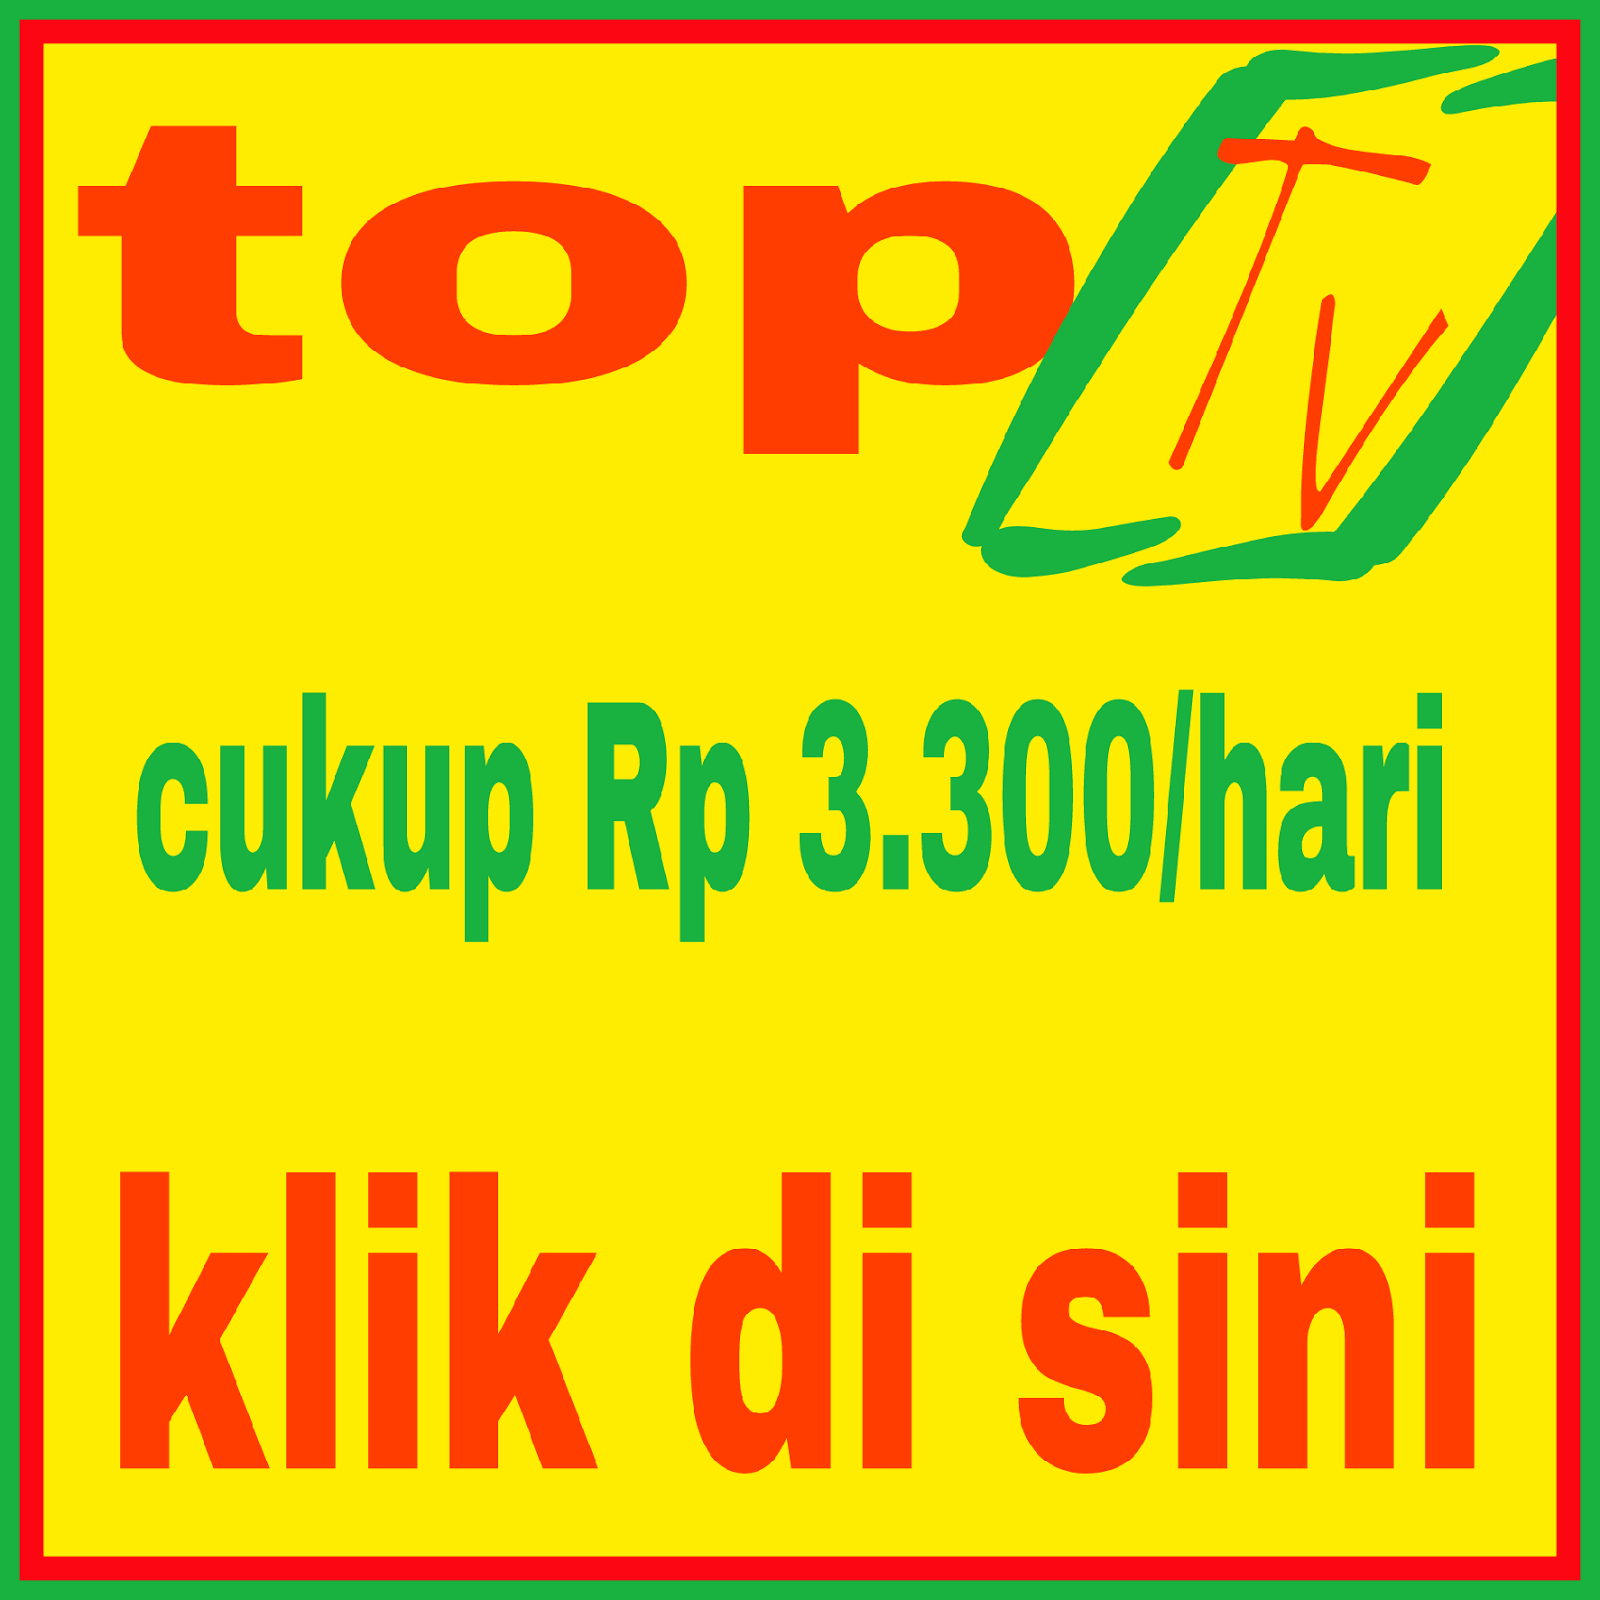 TOP TV 3.300/HARI